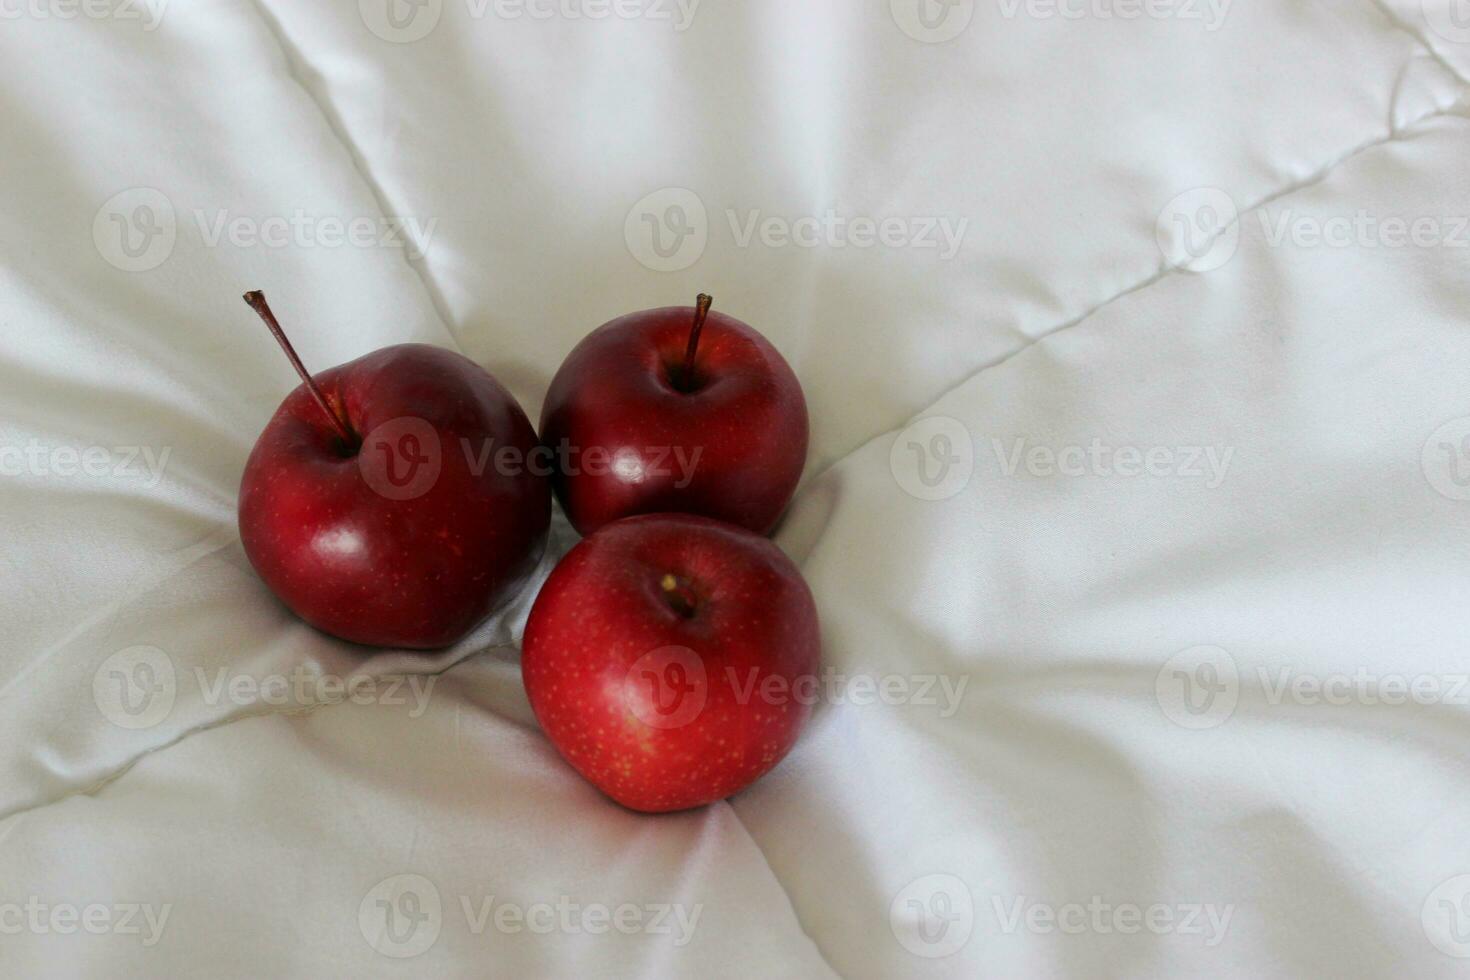 tre röd mogen äpple frukt på en vadderad filt på en sida av bild begrepp för logotyp eller titlar foto